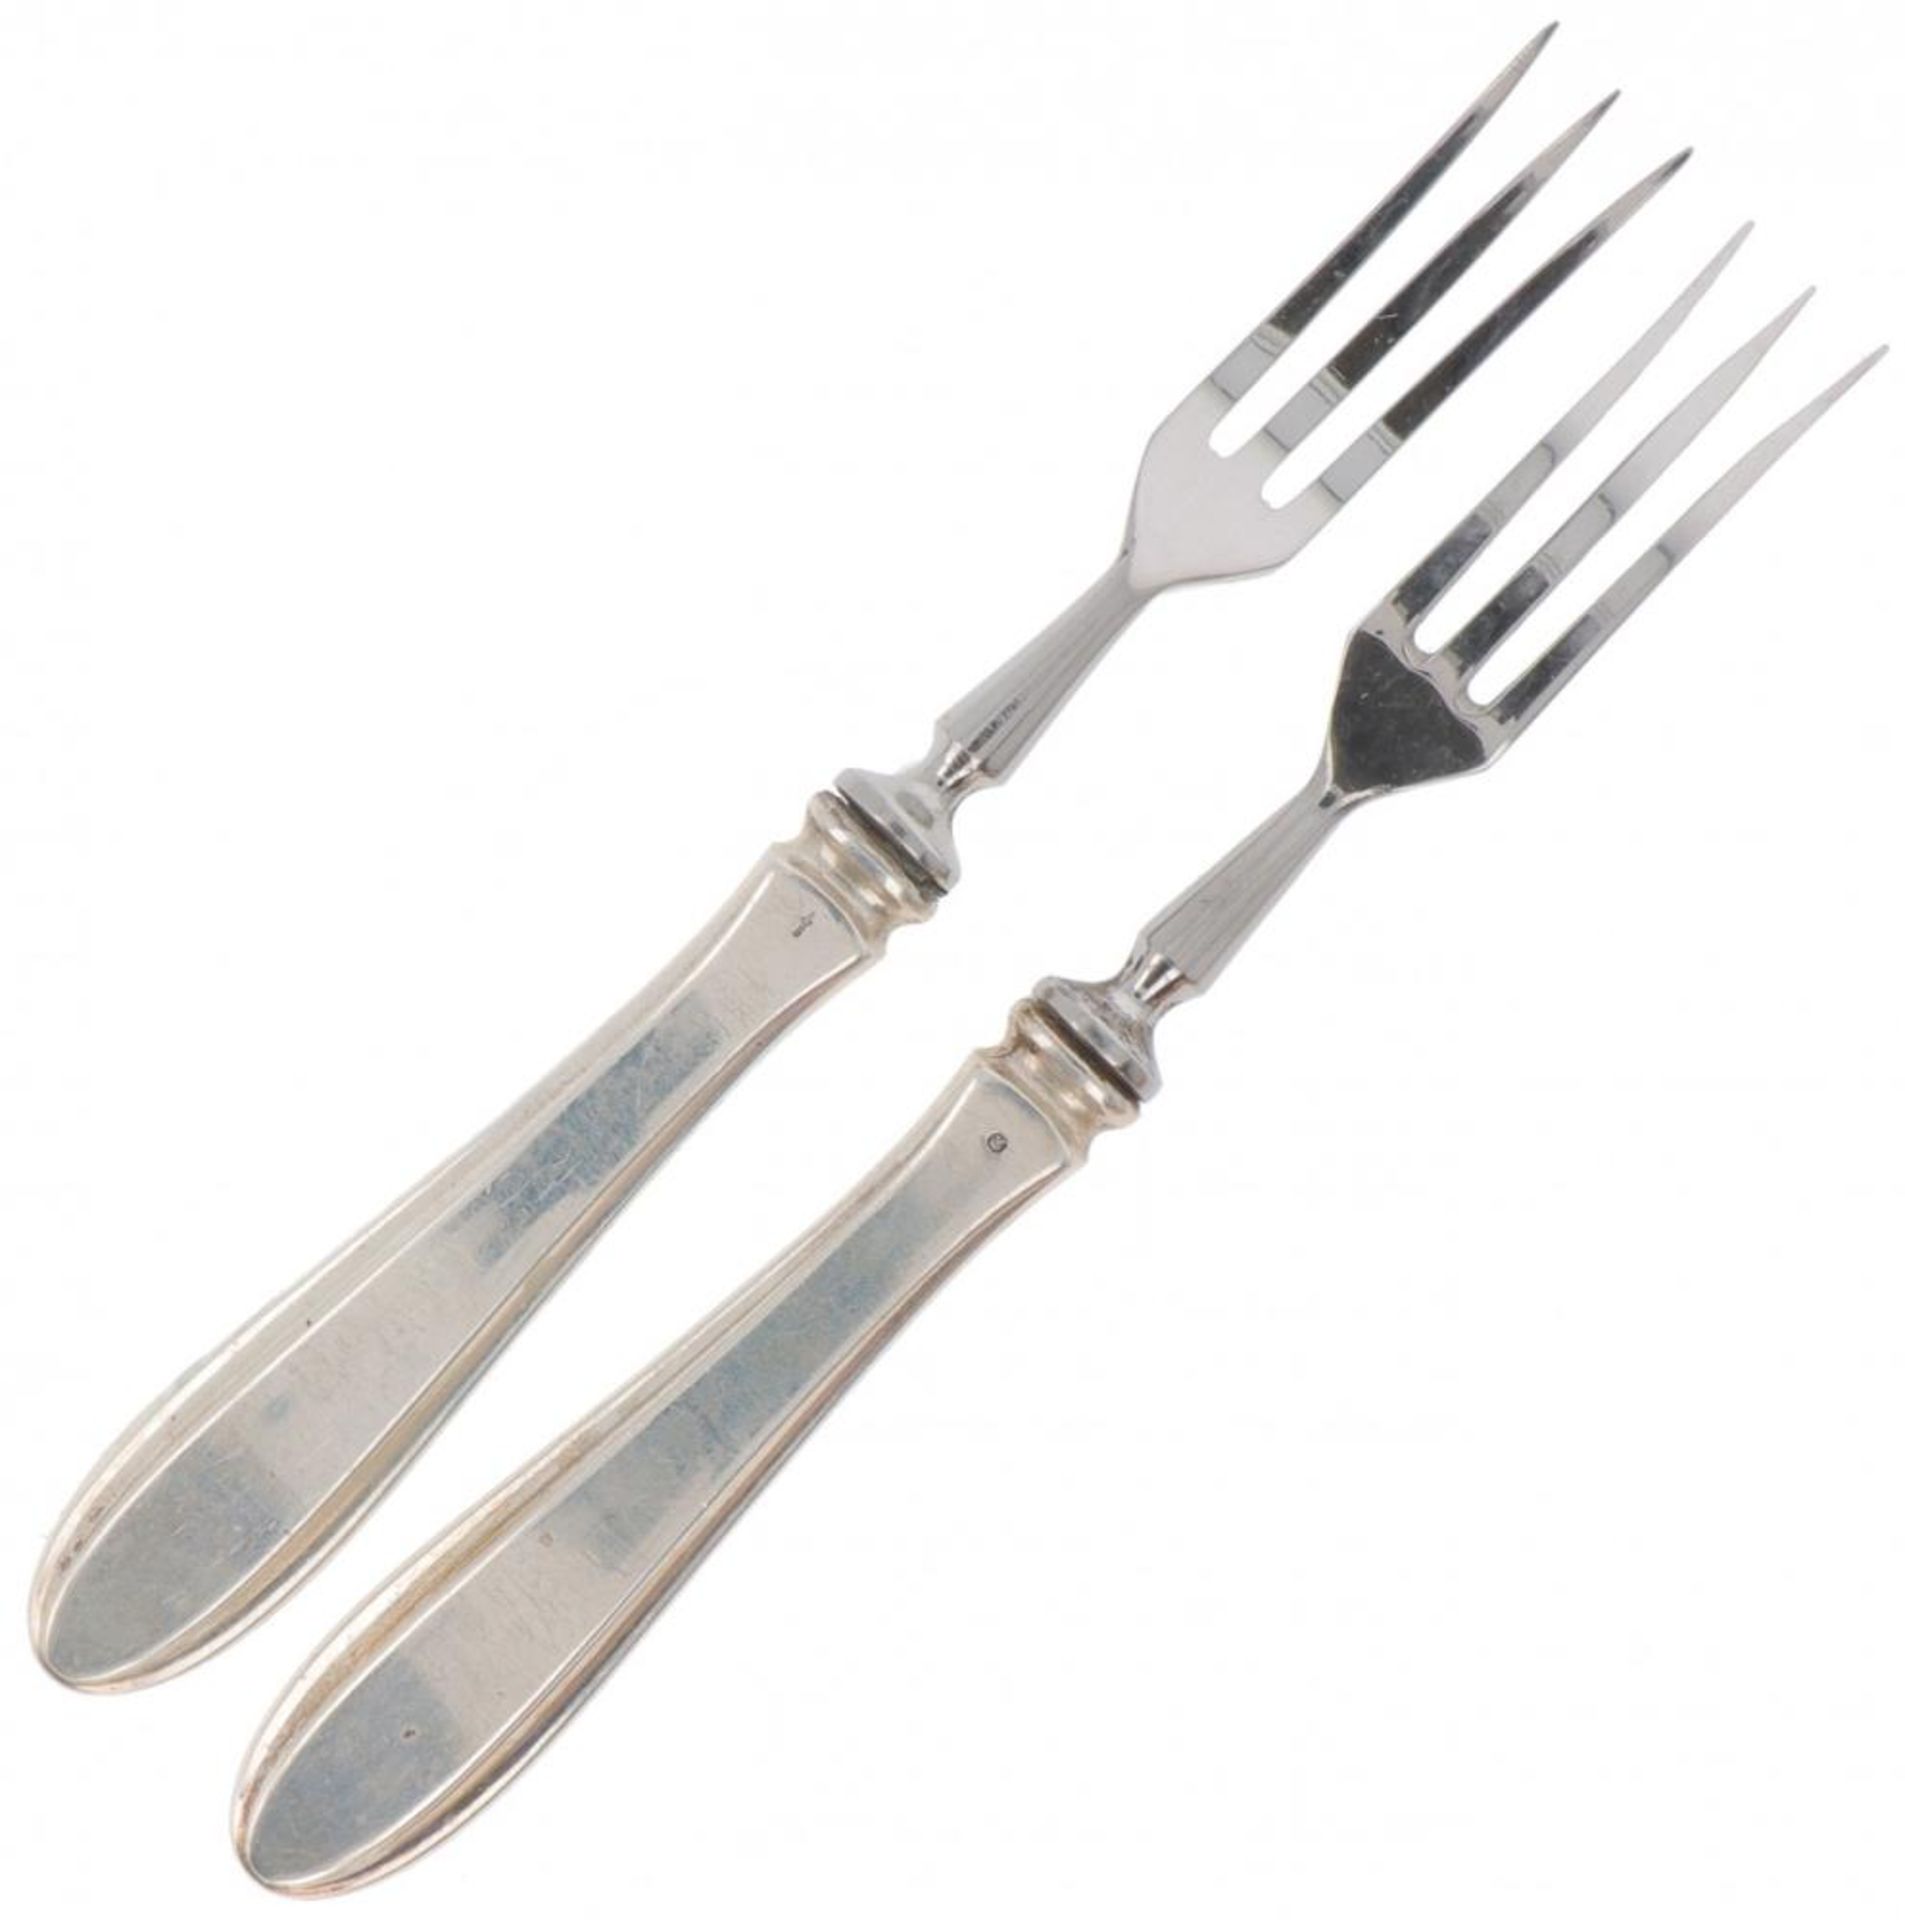 (6) piece set of fruit forks "Dutch point fillet" silver. - Image 2 of 3